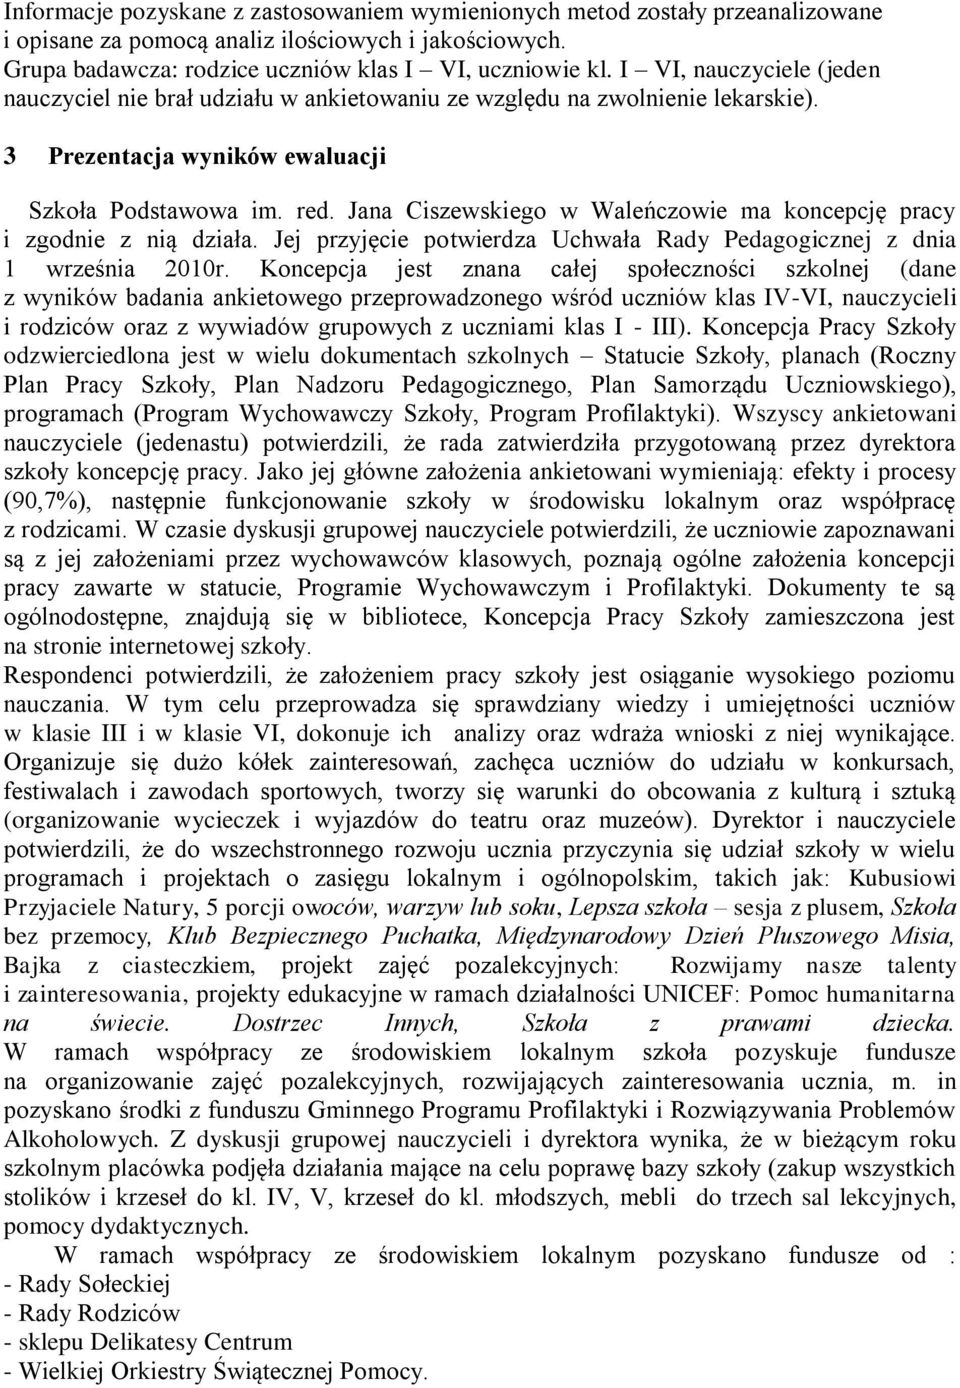 Jana Ciszewskiego w Waleńczowie ma koncepcję pracy i zgodnie z nią działa. Jej przyjęcie potwierdza Uchwała Rady Pedagogicznej z dnia 1 września 2010r.